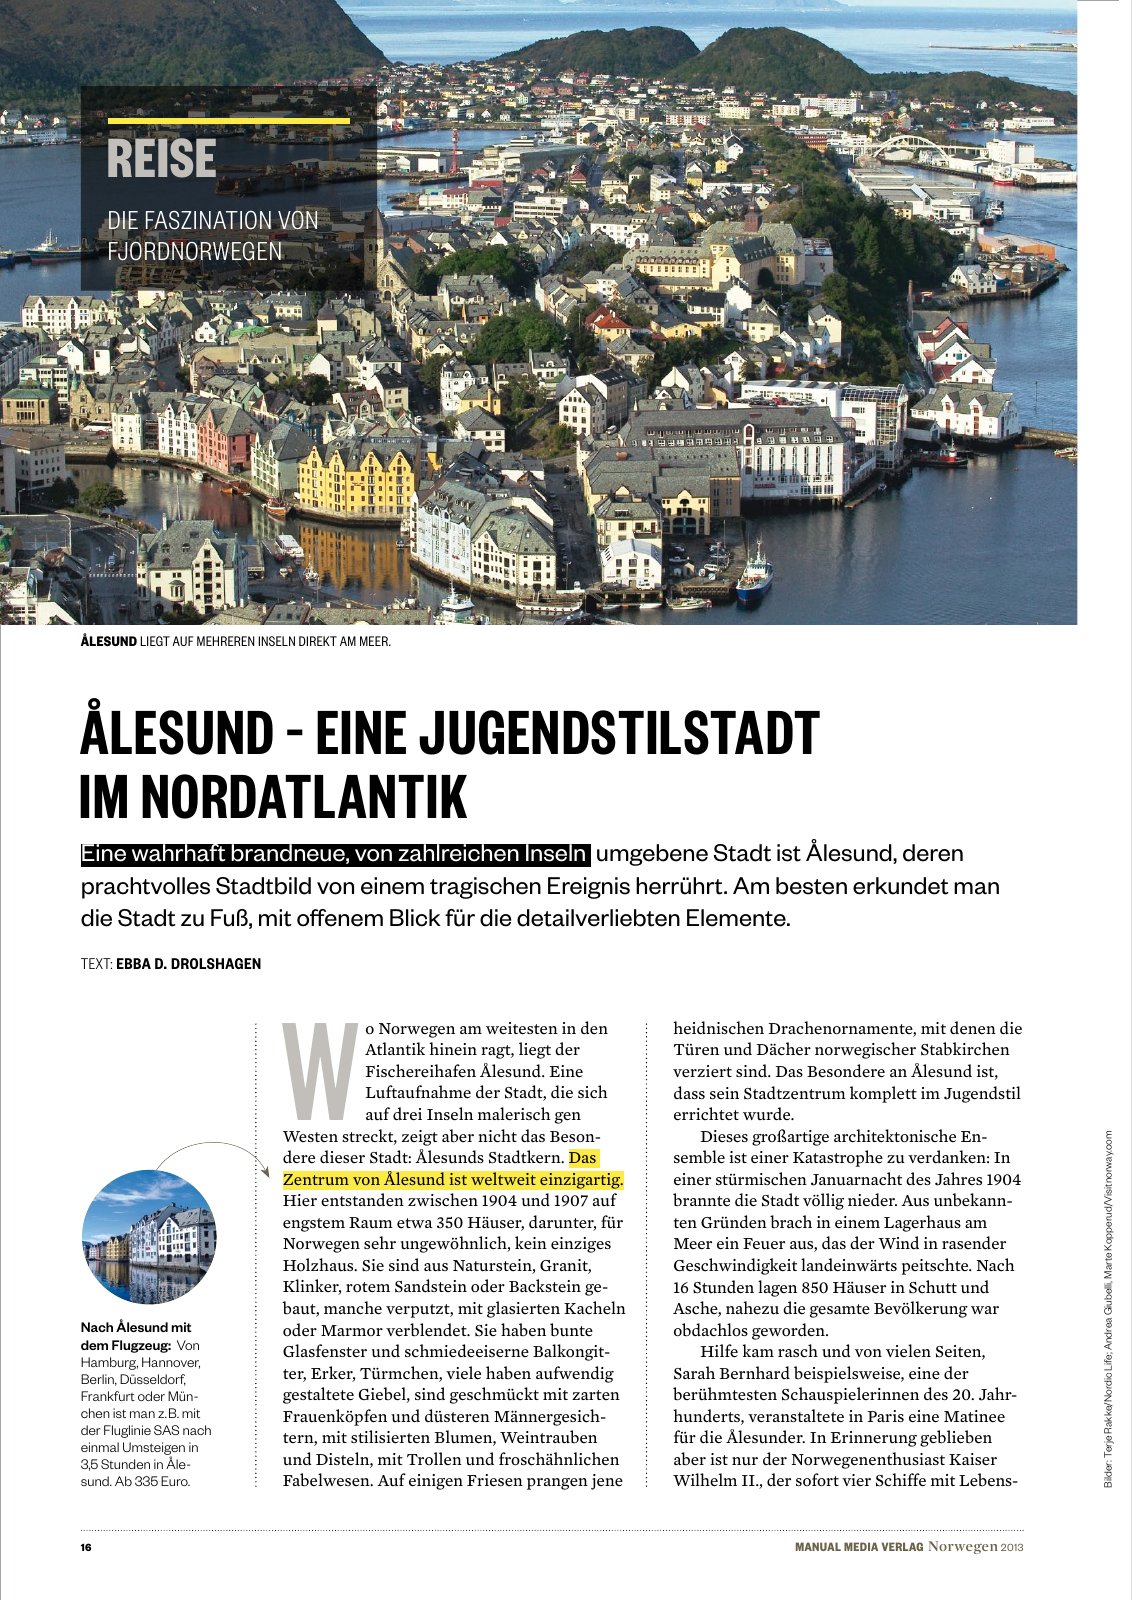 Vorschau MANUAL MEDIA  Norwegen 2013 Seite 16